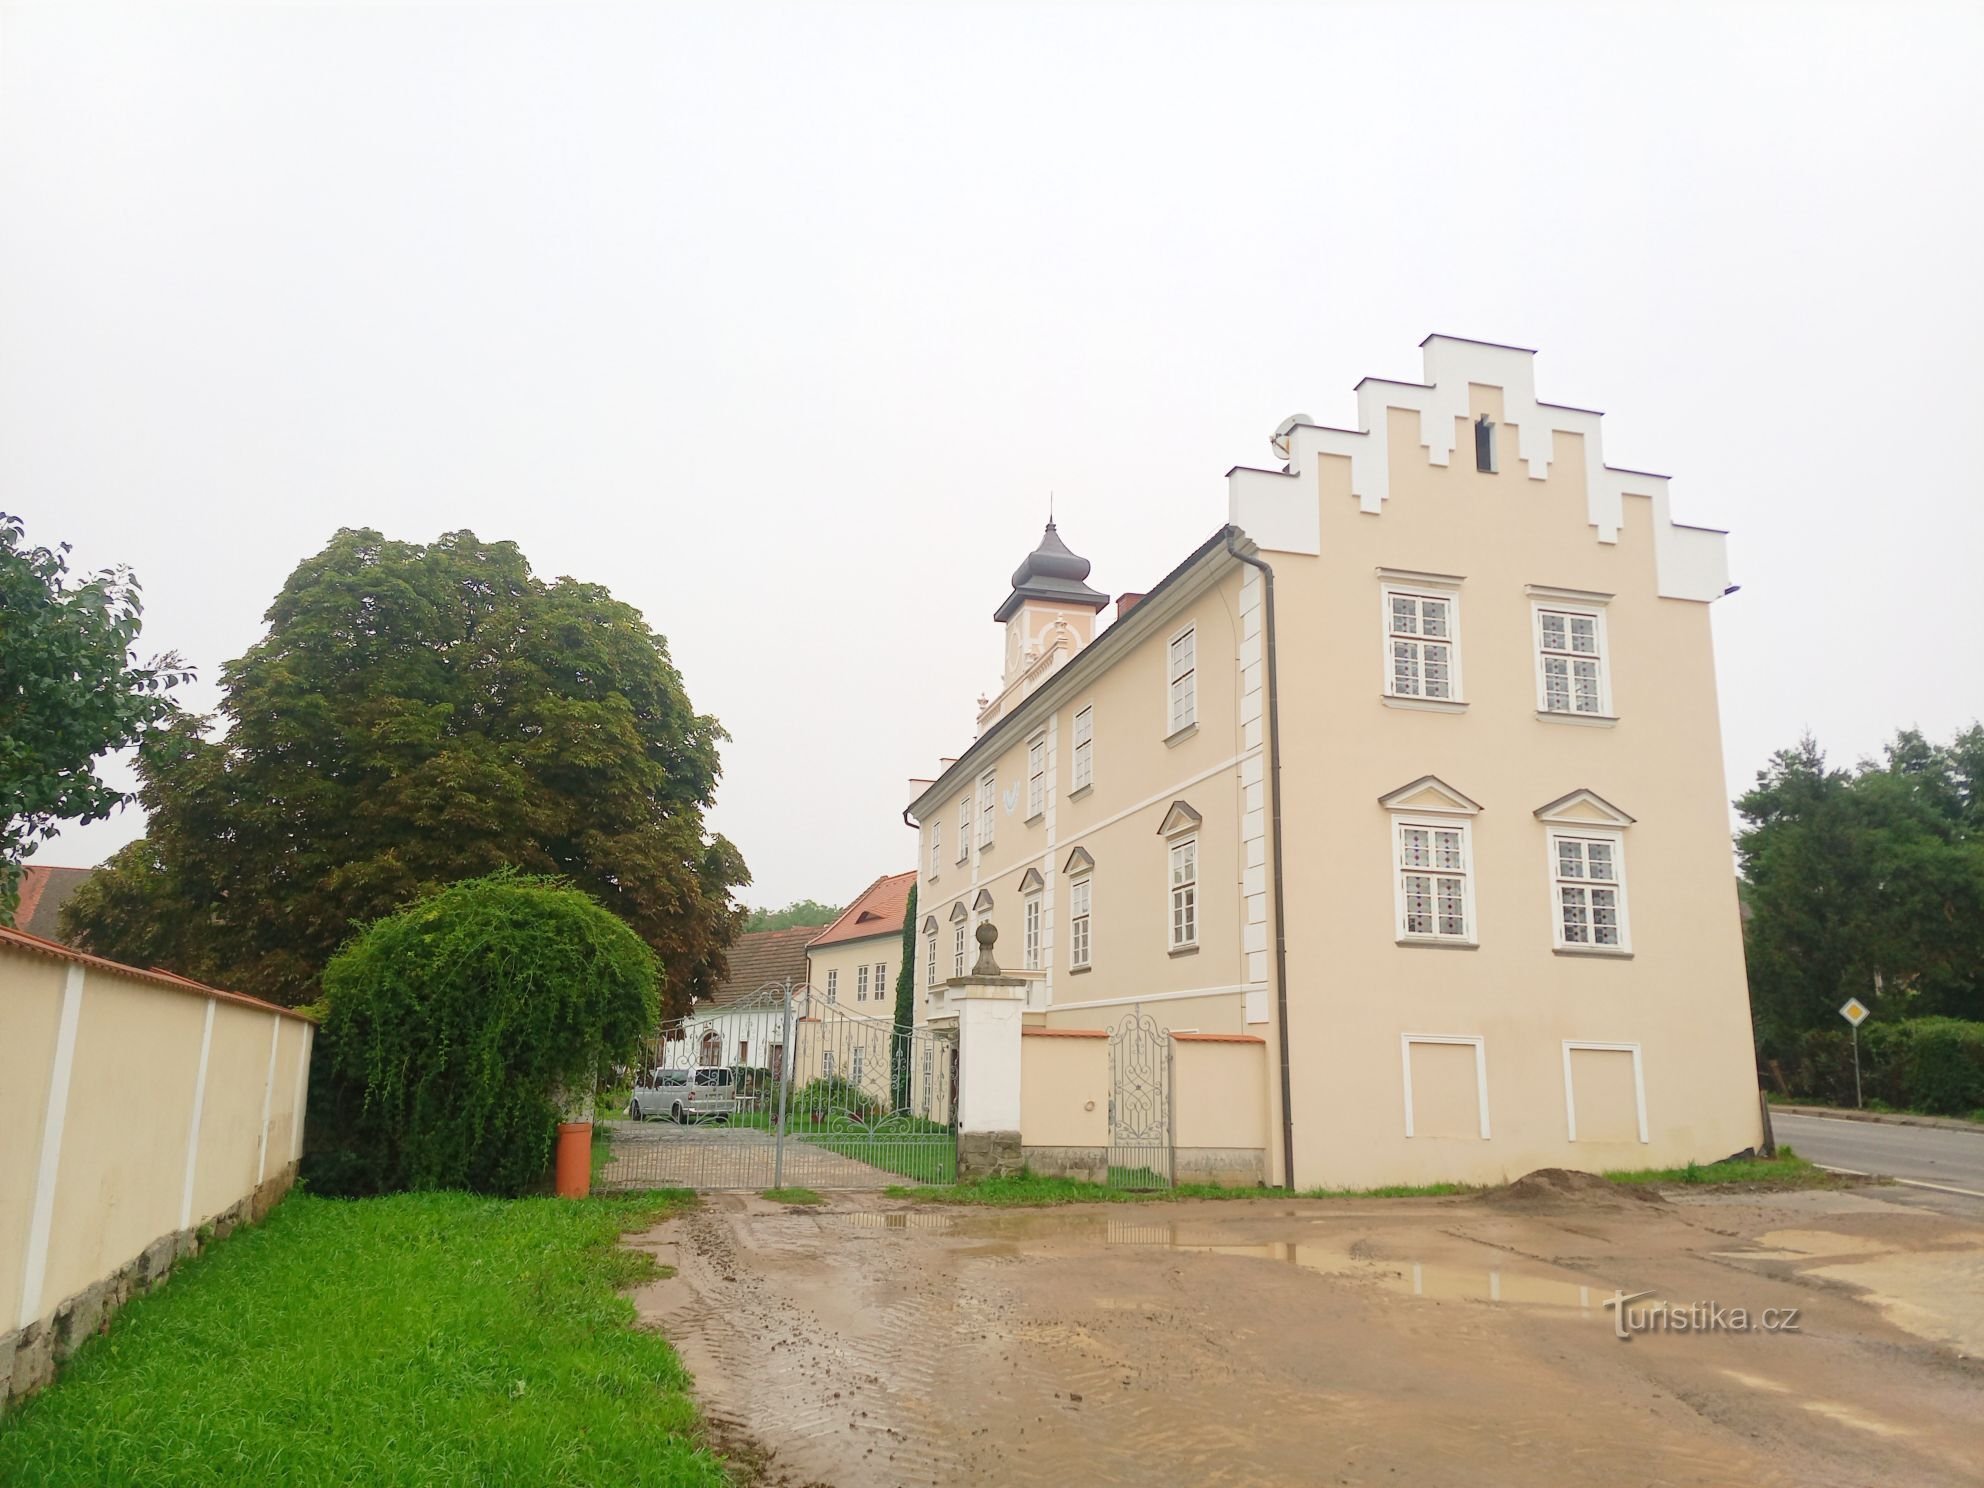 1. Castillo renacentista en Kňovice de principios del siglo XVII. Un edificio rectangular de dos pisos con tr